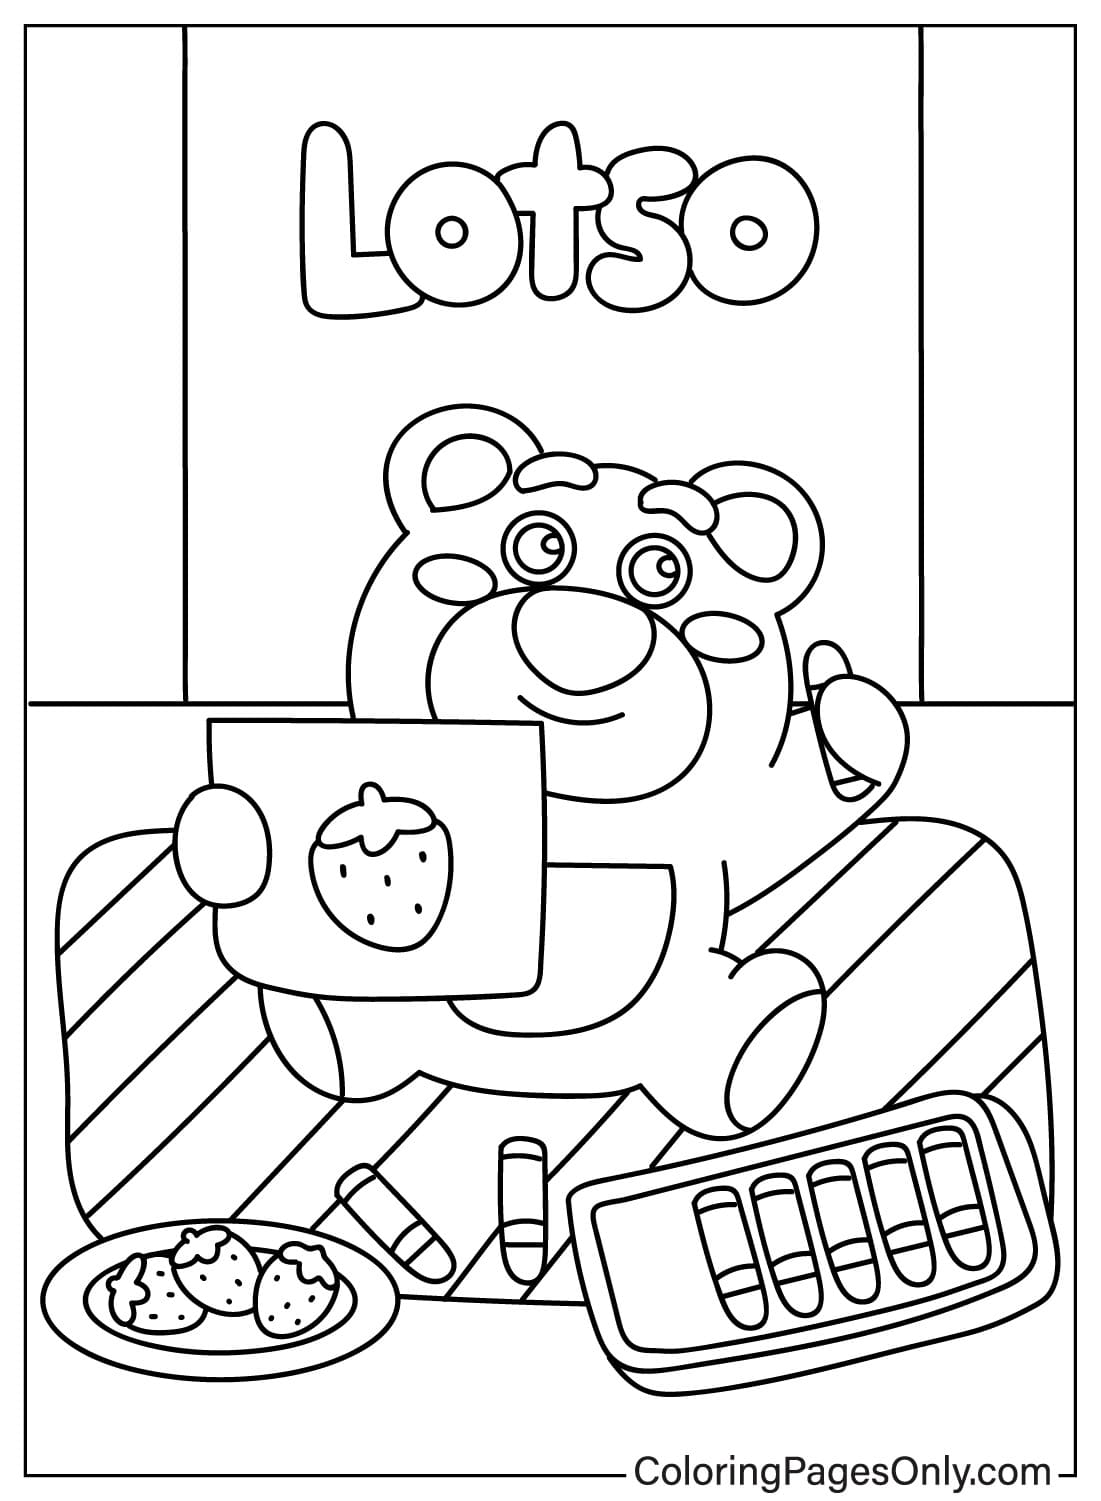 Lotso Bear kleurboek van Lotso Bear